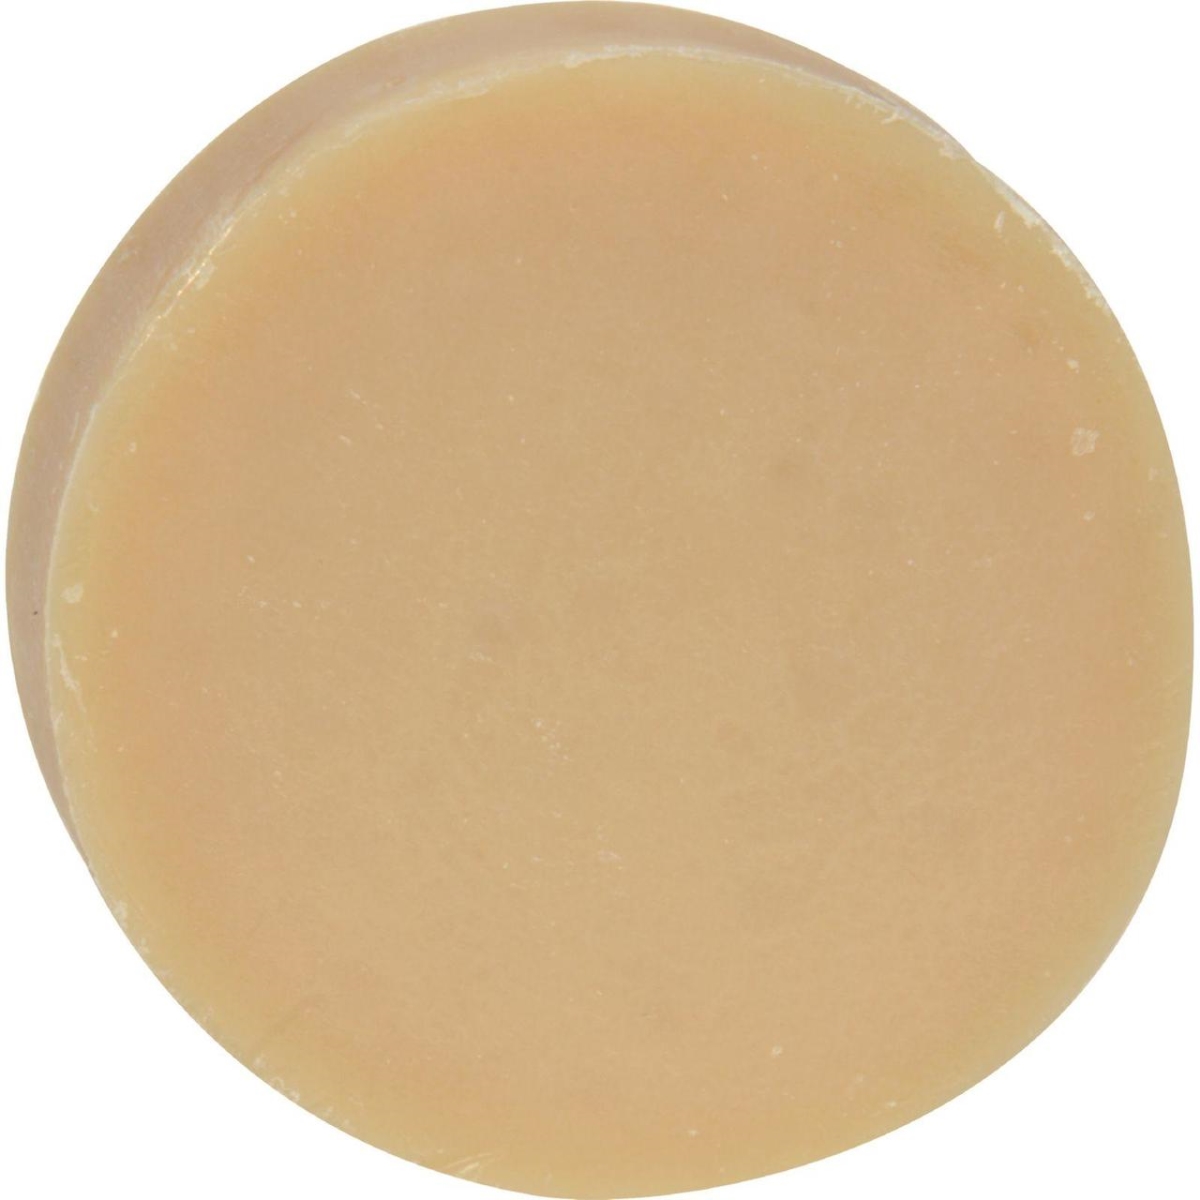 Soapworks Hg0523225 3.5 Oz Glycerine Soap Almond - Case Of 12